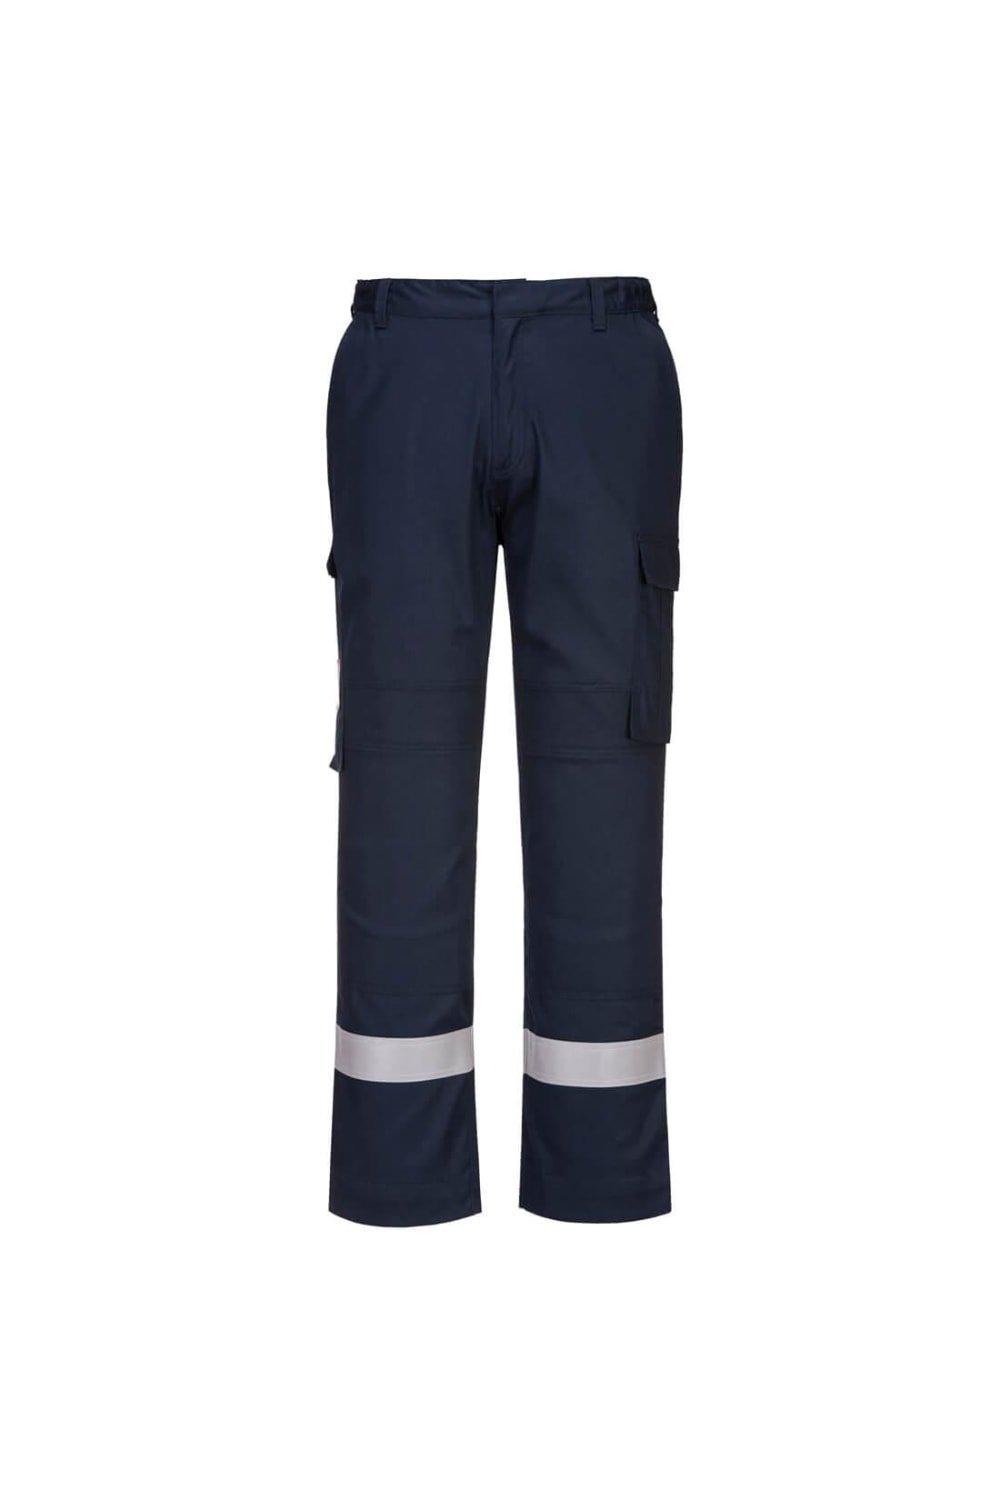 Рабочие брюки со вставками Bizflame Plus Portwest, темно-синий